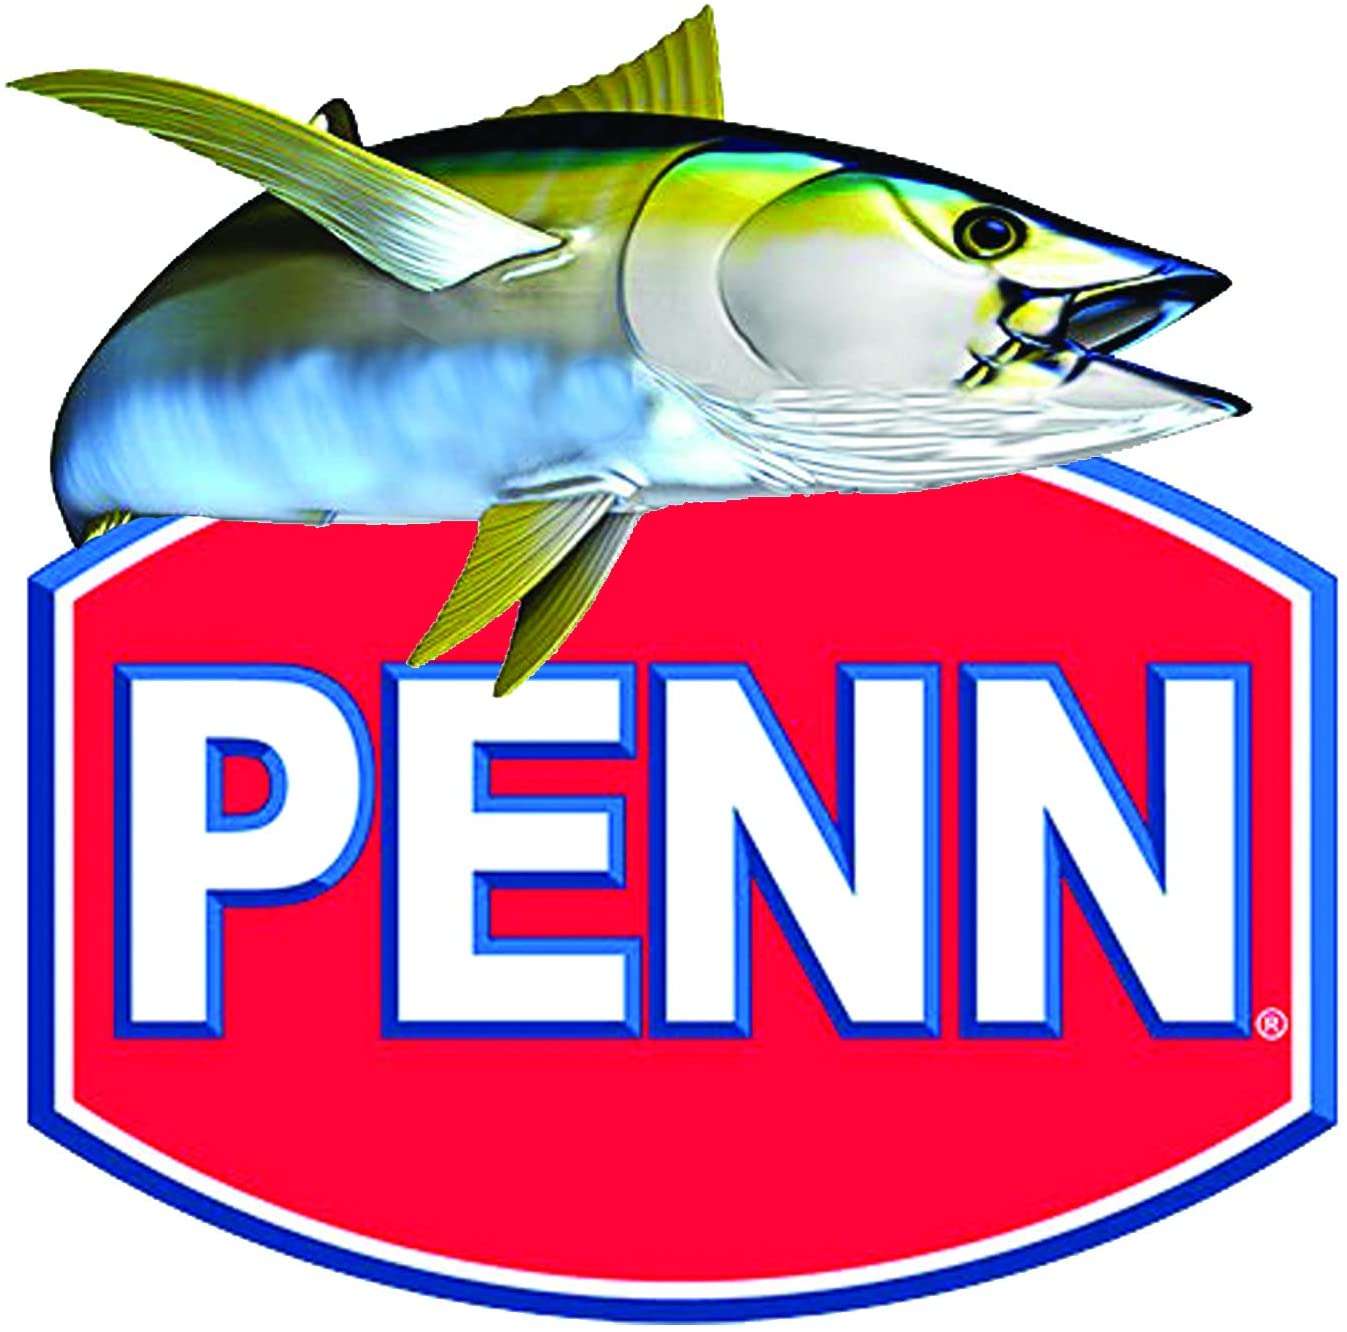 PENN LOGO FISHING STICKER 2 - Pro Sport Stickers